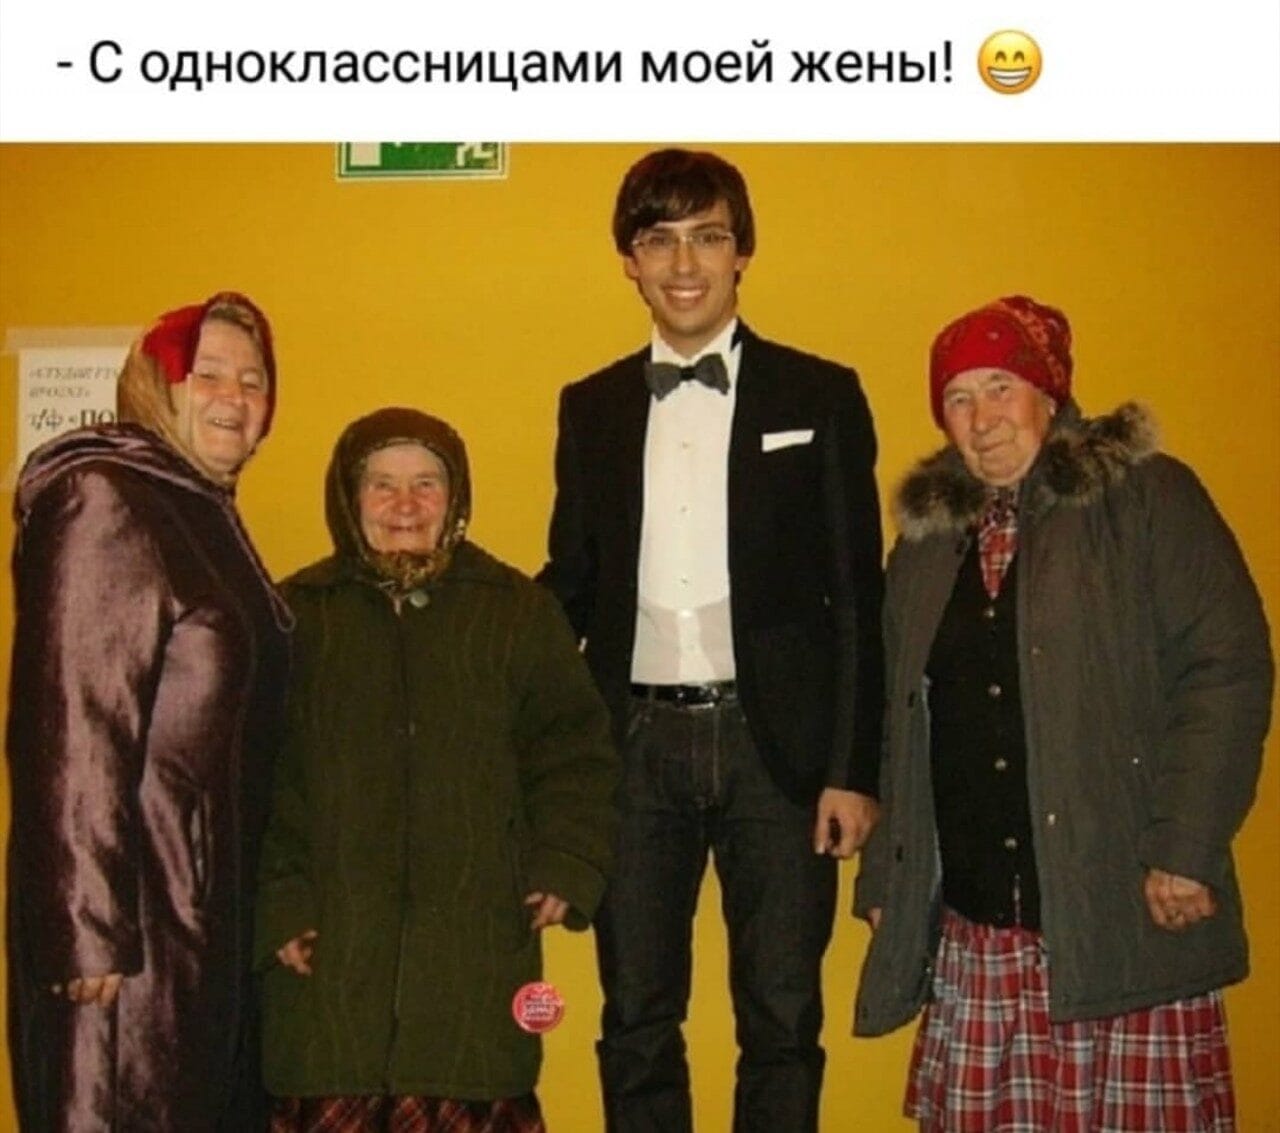 Галкин с одноклассницами Пугачевой